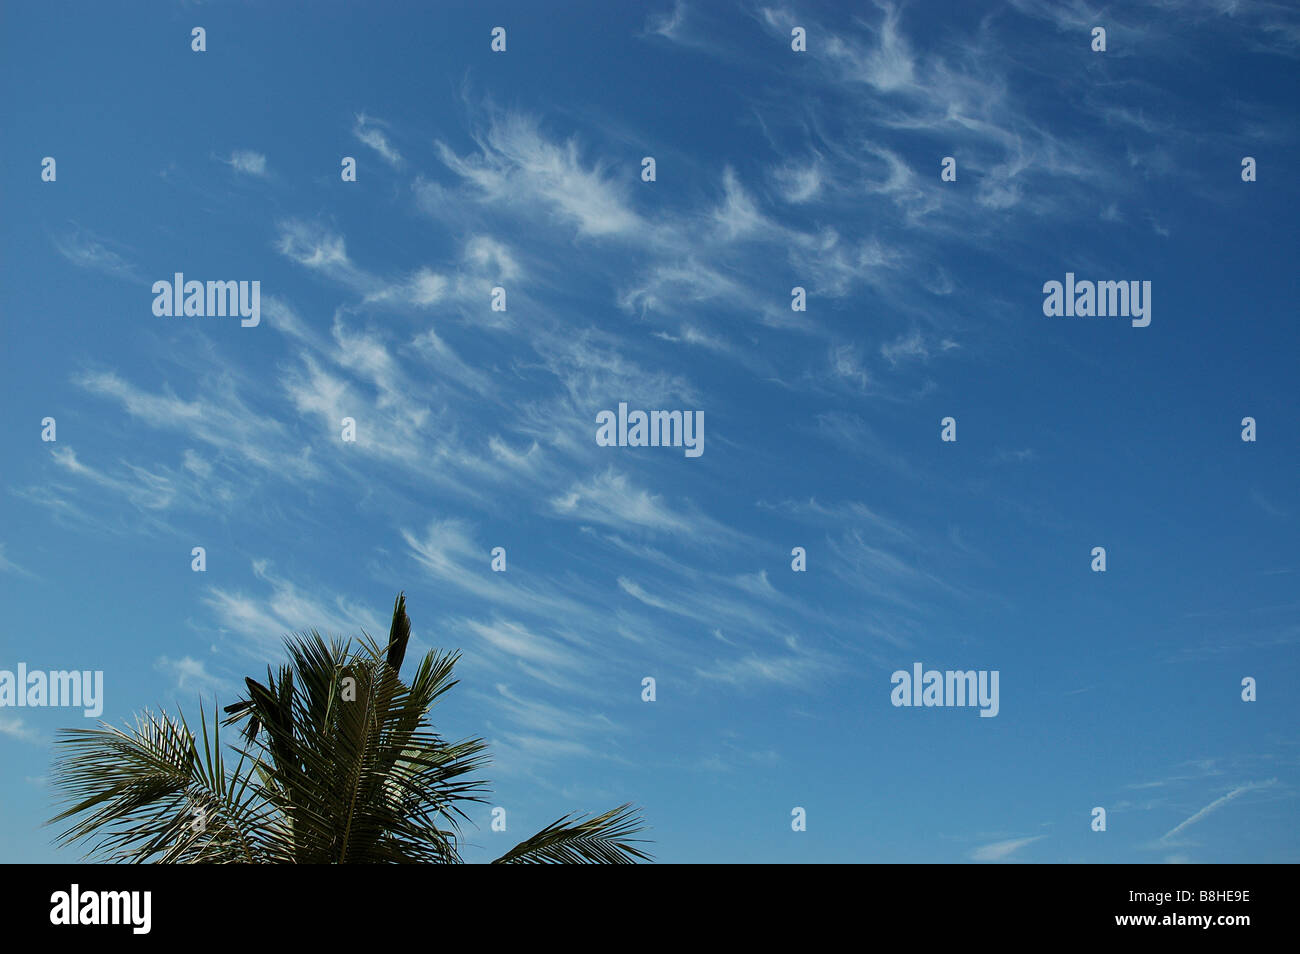 windgepeitschten Cirruswolken im blauen Himmel, palm-Baum, Jumeirah Beach, Dubai, Vereinigte Arabische Emirate, Golfregion, Nahost Stockfoto